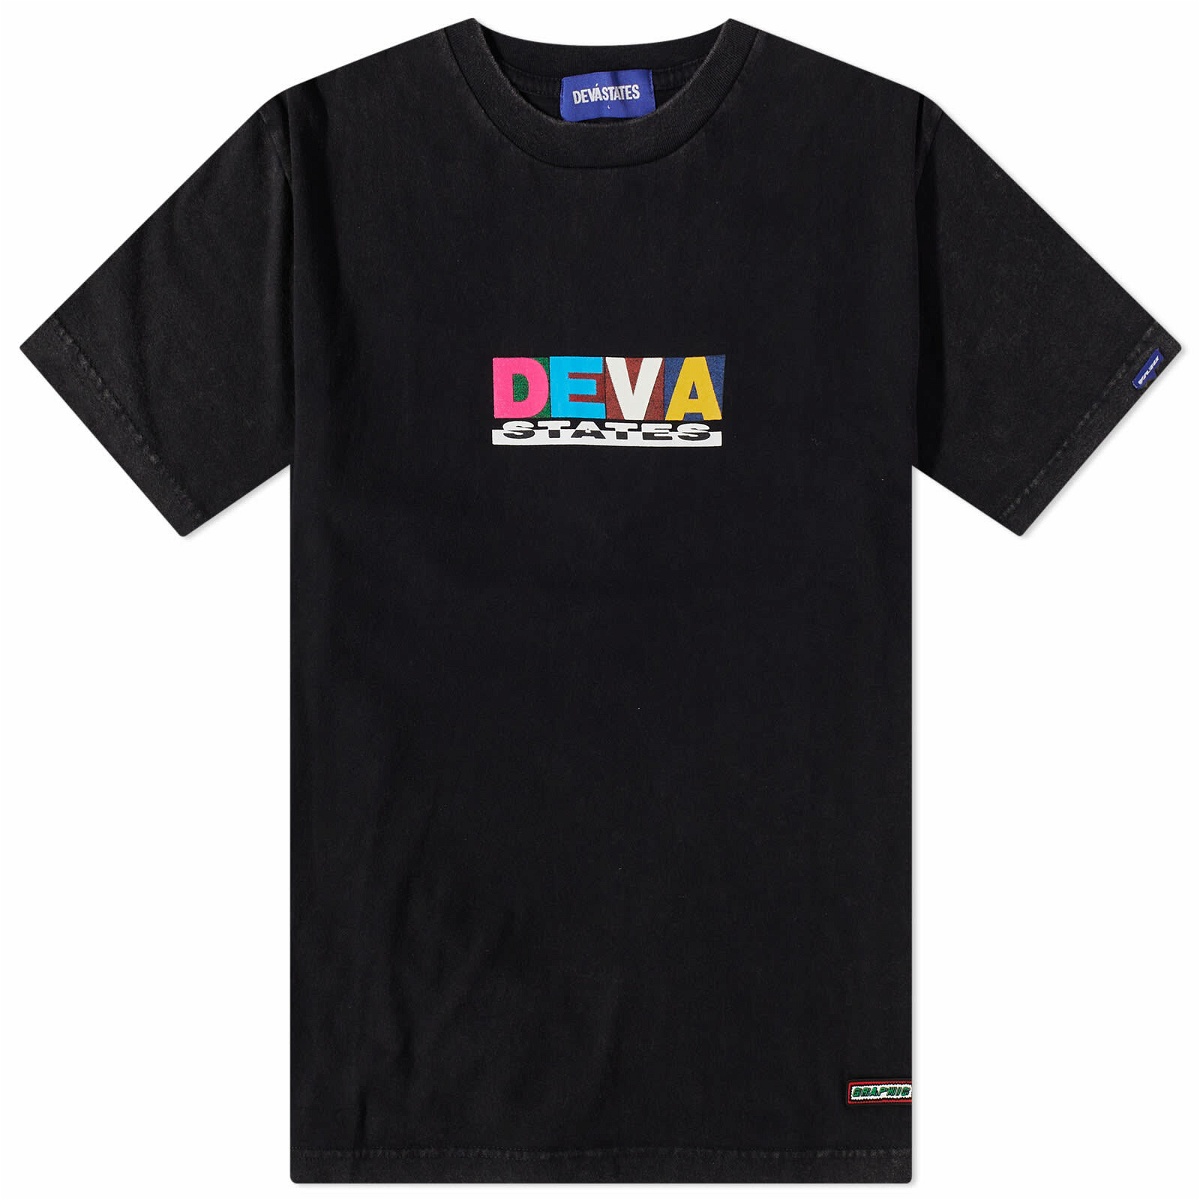 Deva States Men's Stomper T-Shirt in Washed Black DEVÁ STATES